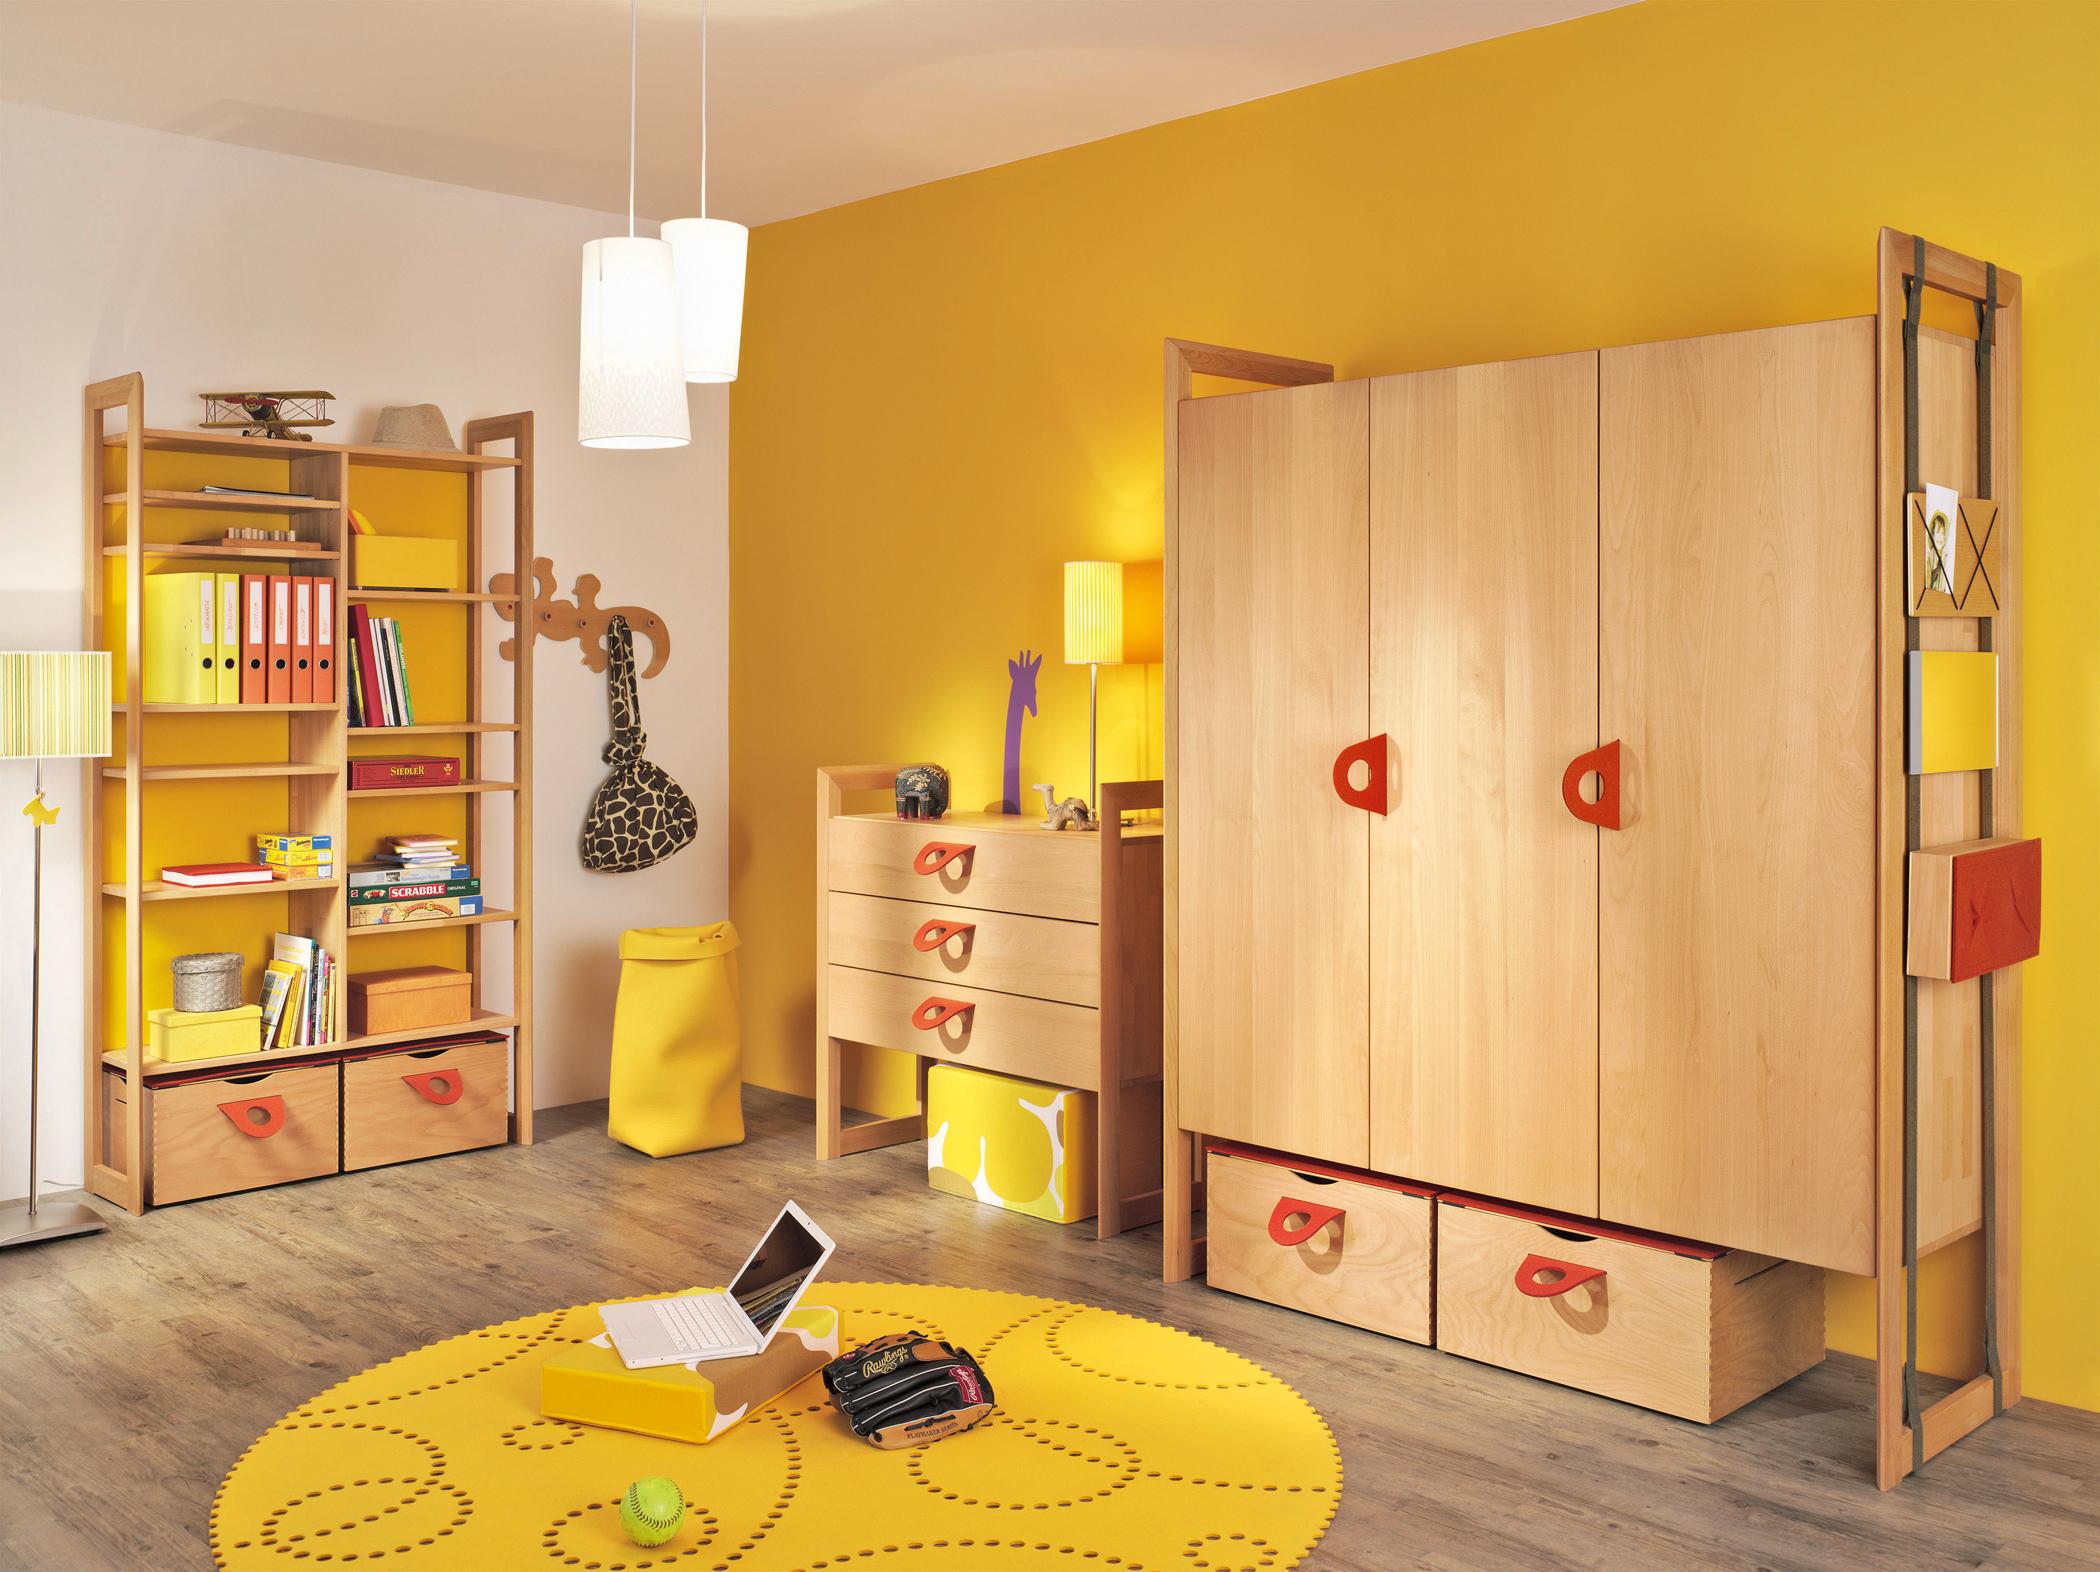 Gelbe Farbgestaltung im Kinderzimmer #kommode #garderobe #kleiderschrank #runderteppich #holzregal ©Team 7